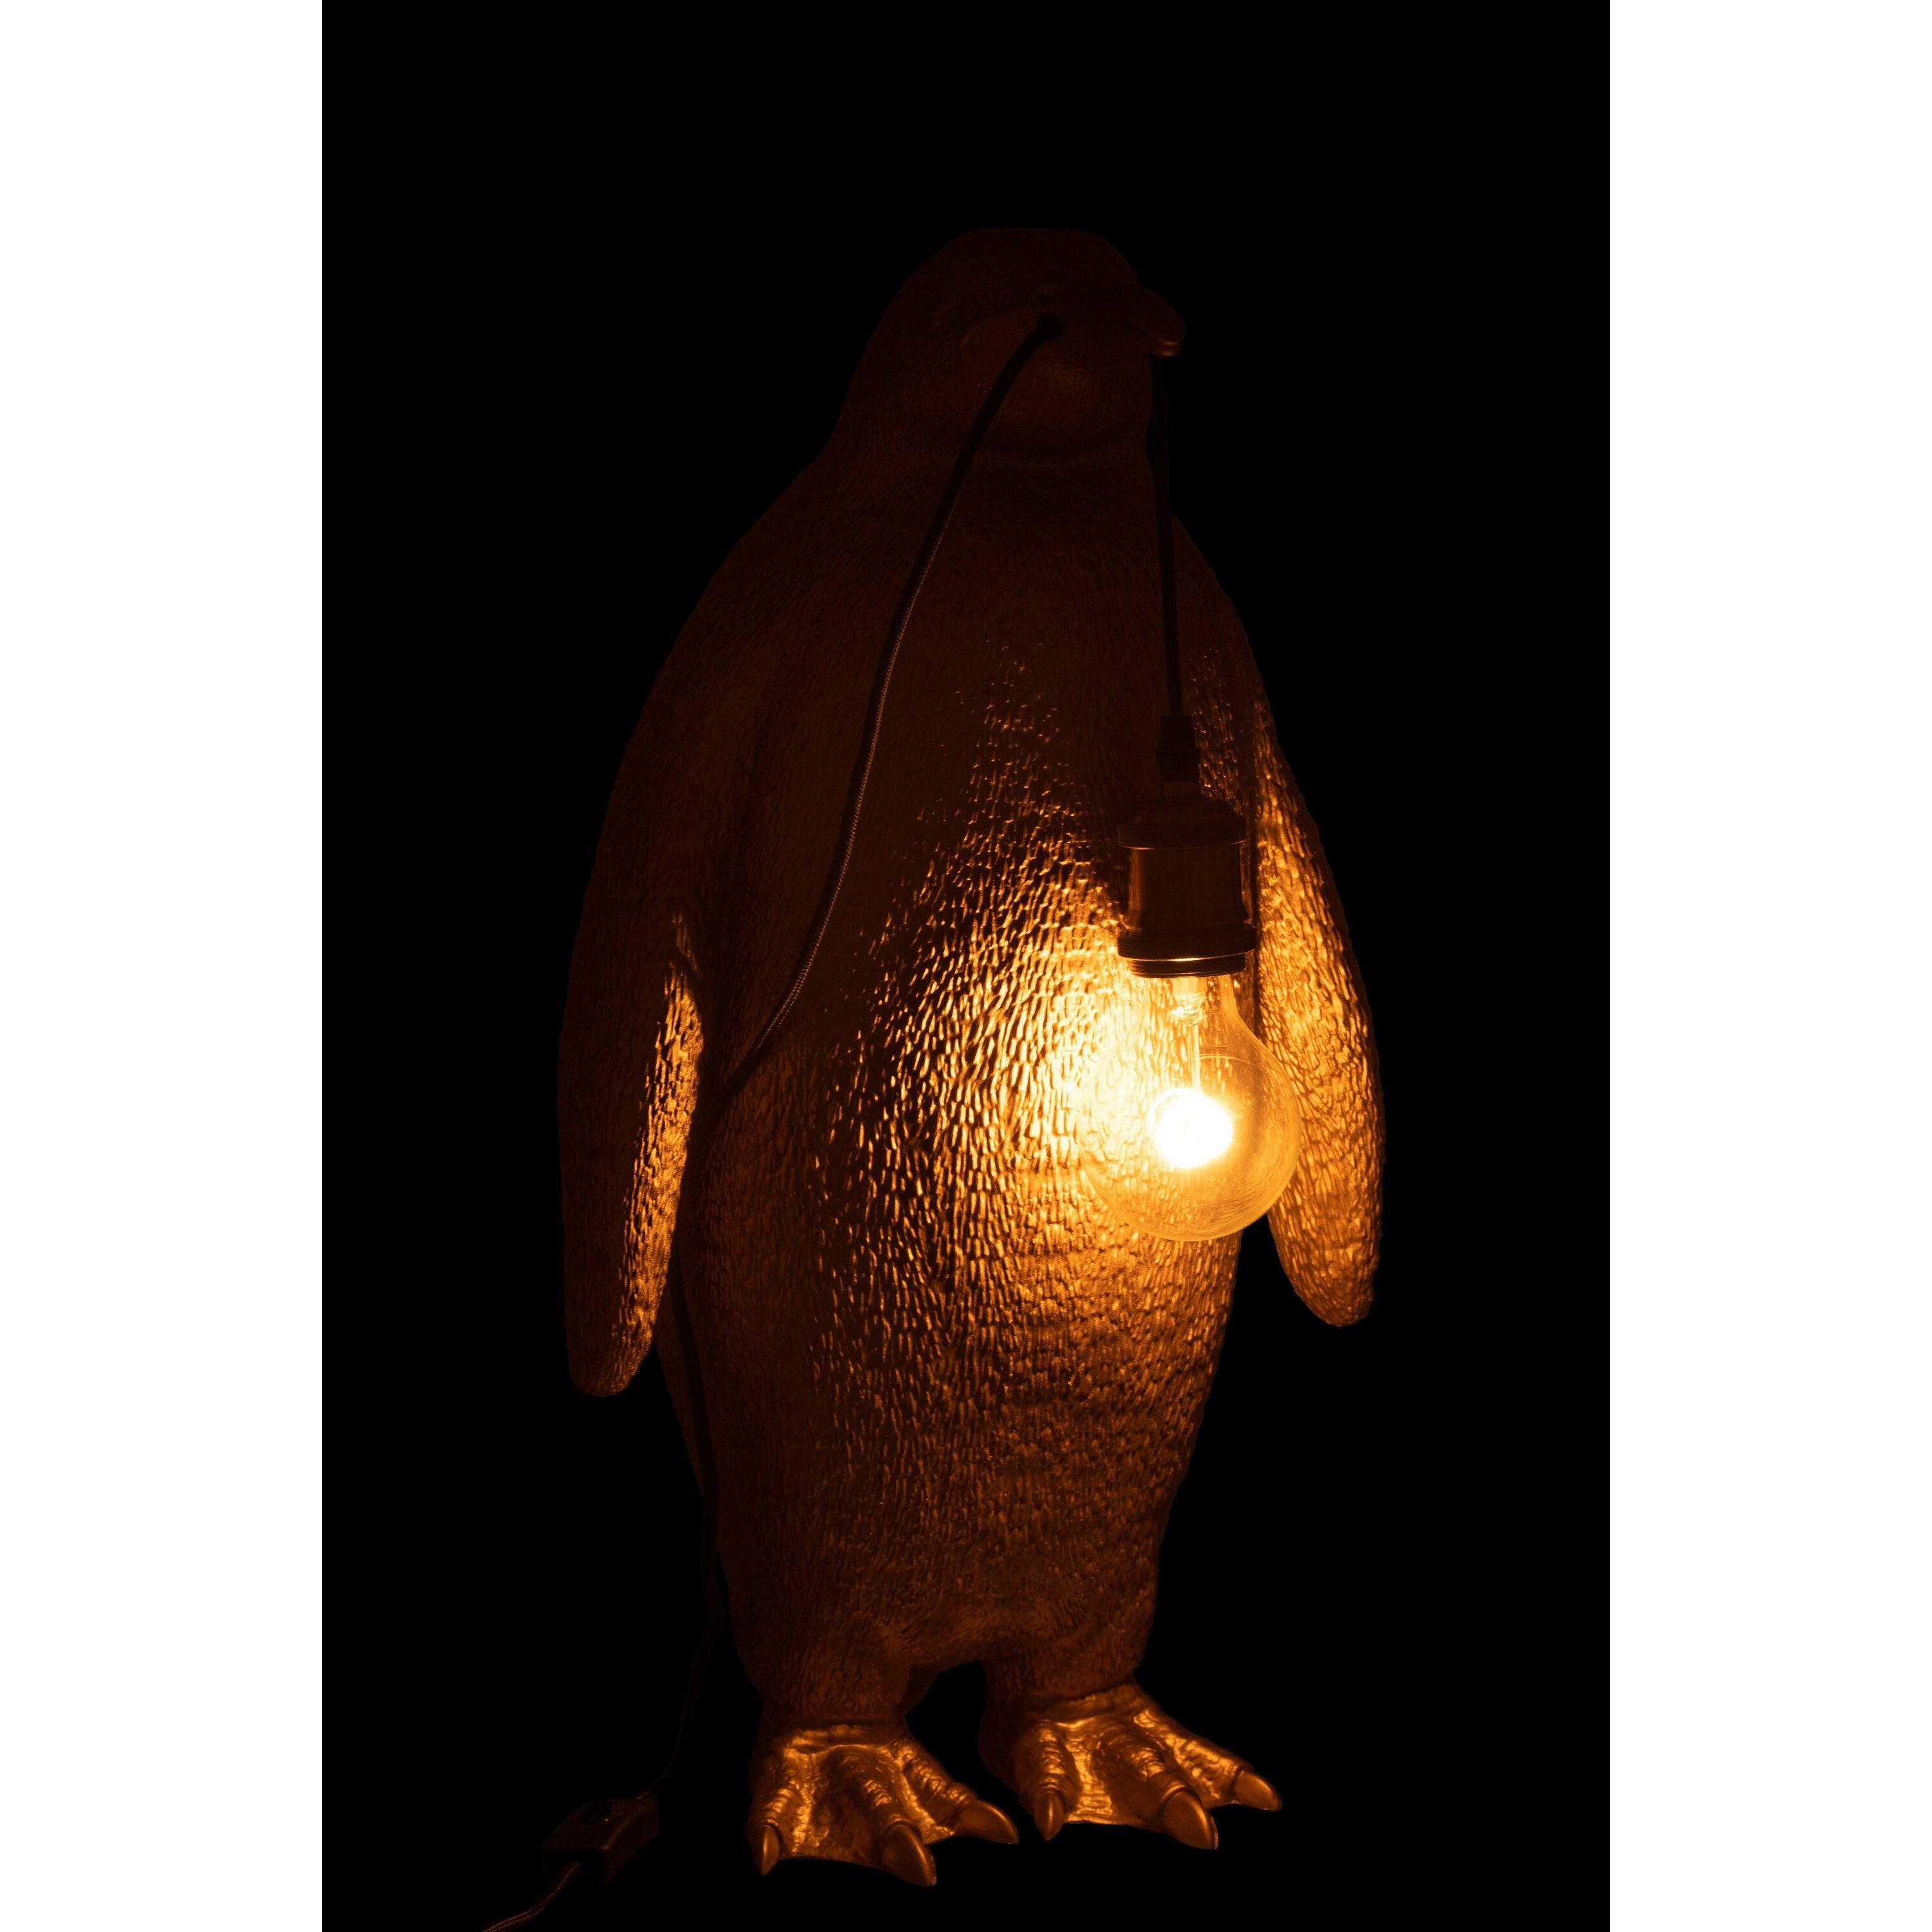 Tafellamp Pinguïn Resine Goud Large